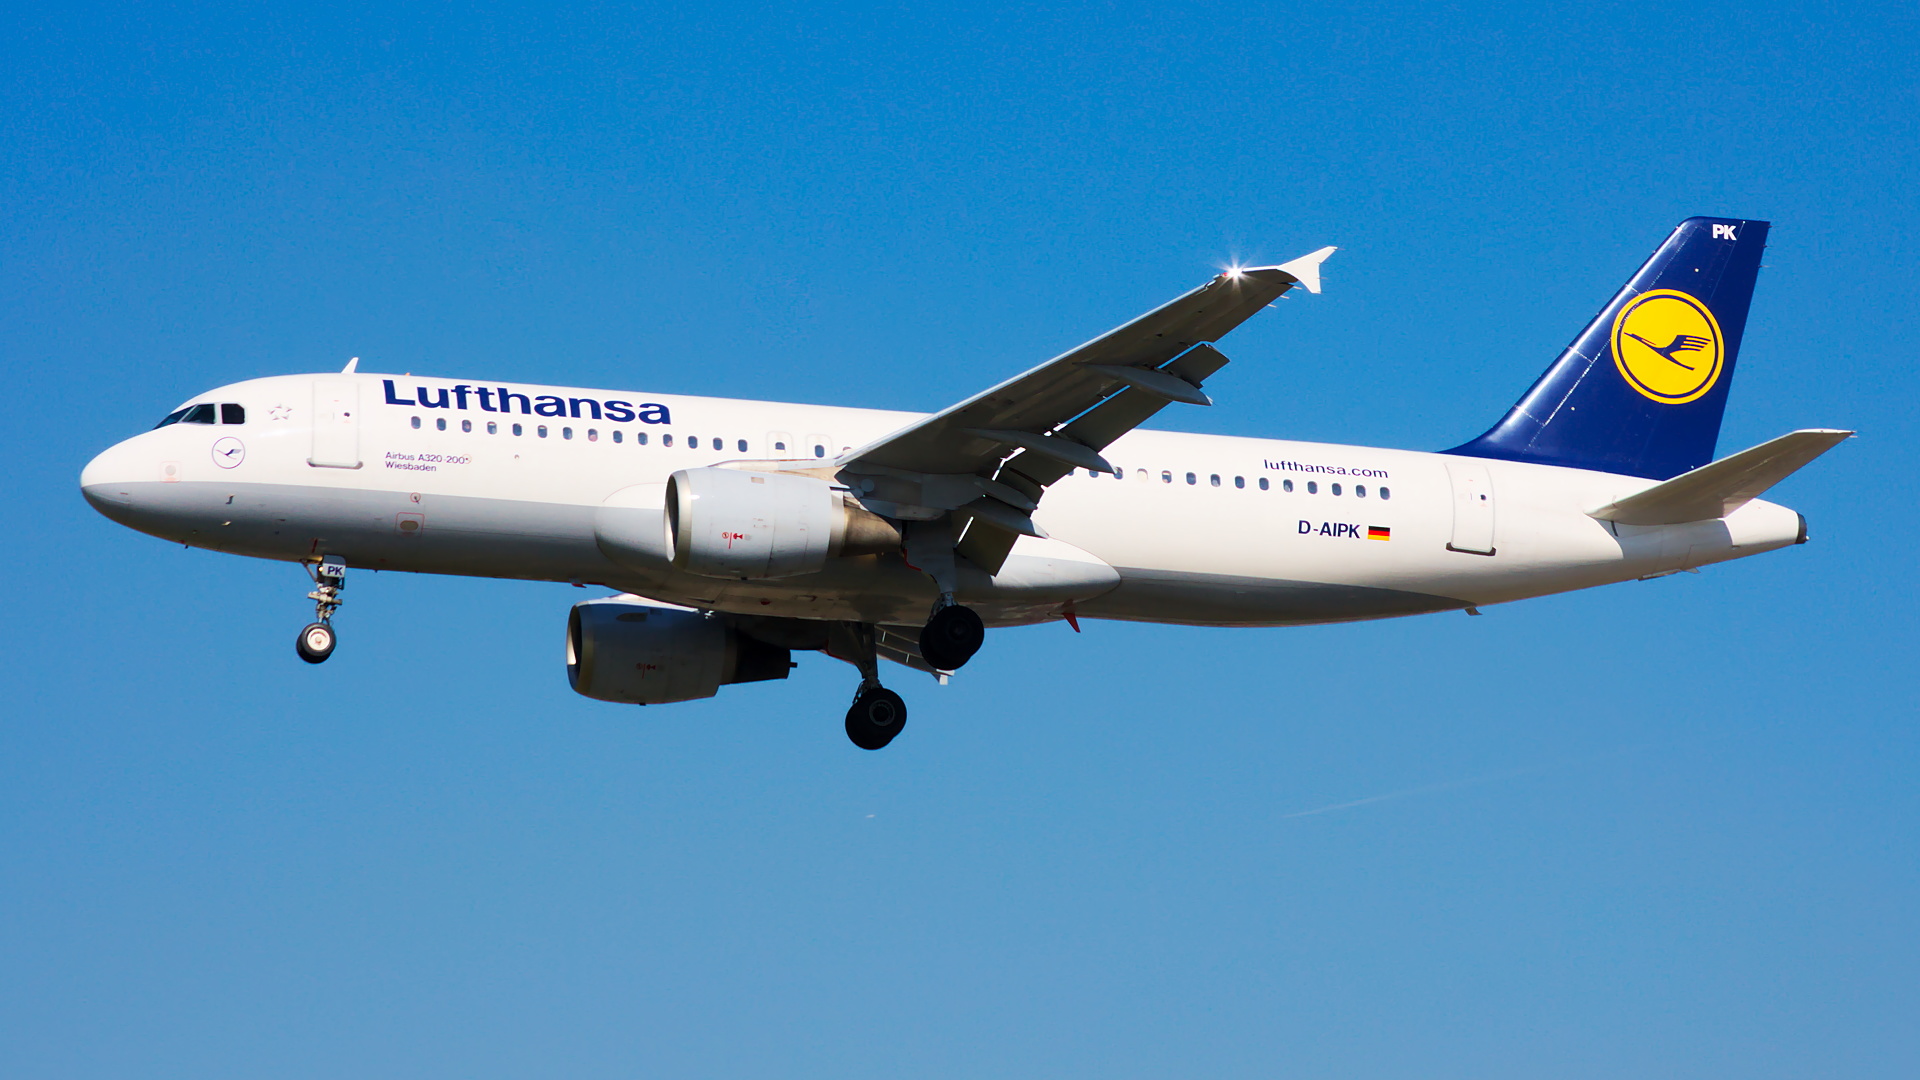 D-AIPK ✈ Lufthansa Airbus A320-211 @ London-Heathrow